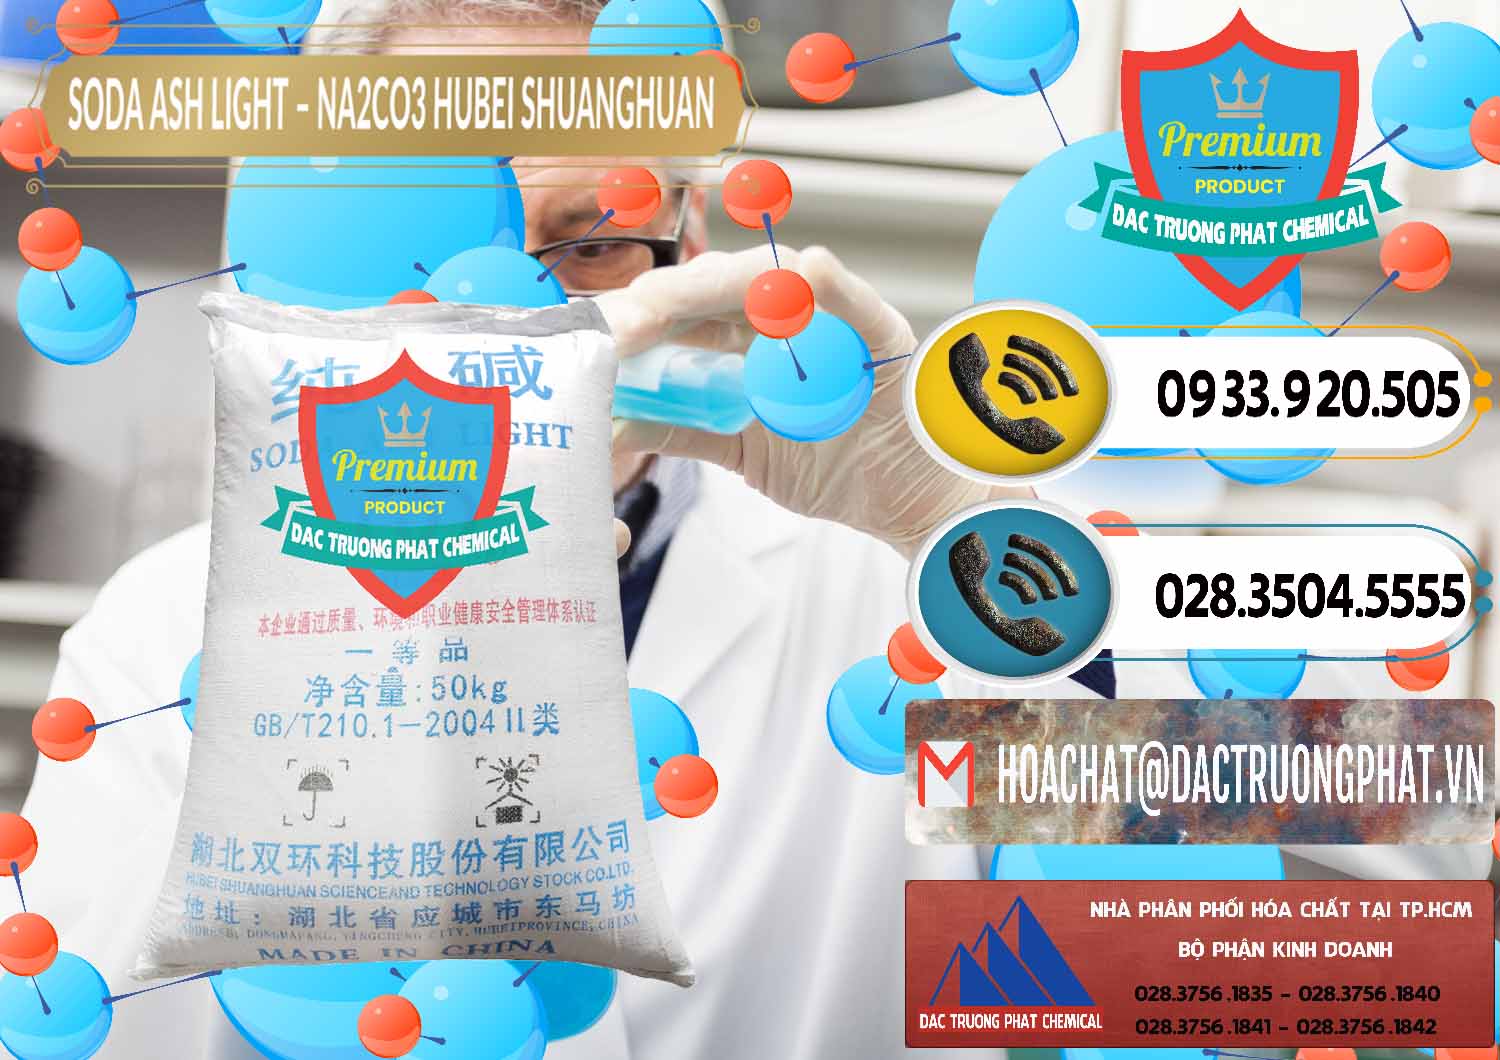 Cty bán - phân phối Soda Ash Light - NA2CO3 2 Vòng Tròn Hubei Shuanghuan Trung Quốc China - 0130 - Nhà nhập khẩu - cung cấp hóa chất tại TP.HCM - hoachatdetnhuom.vn